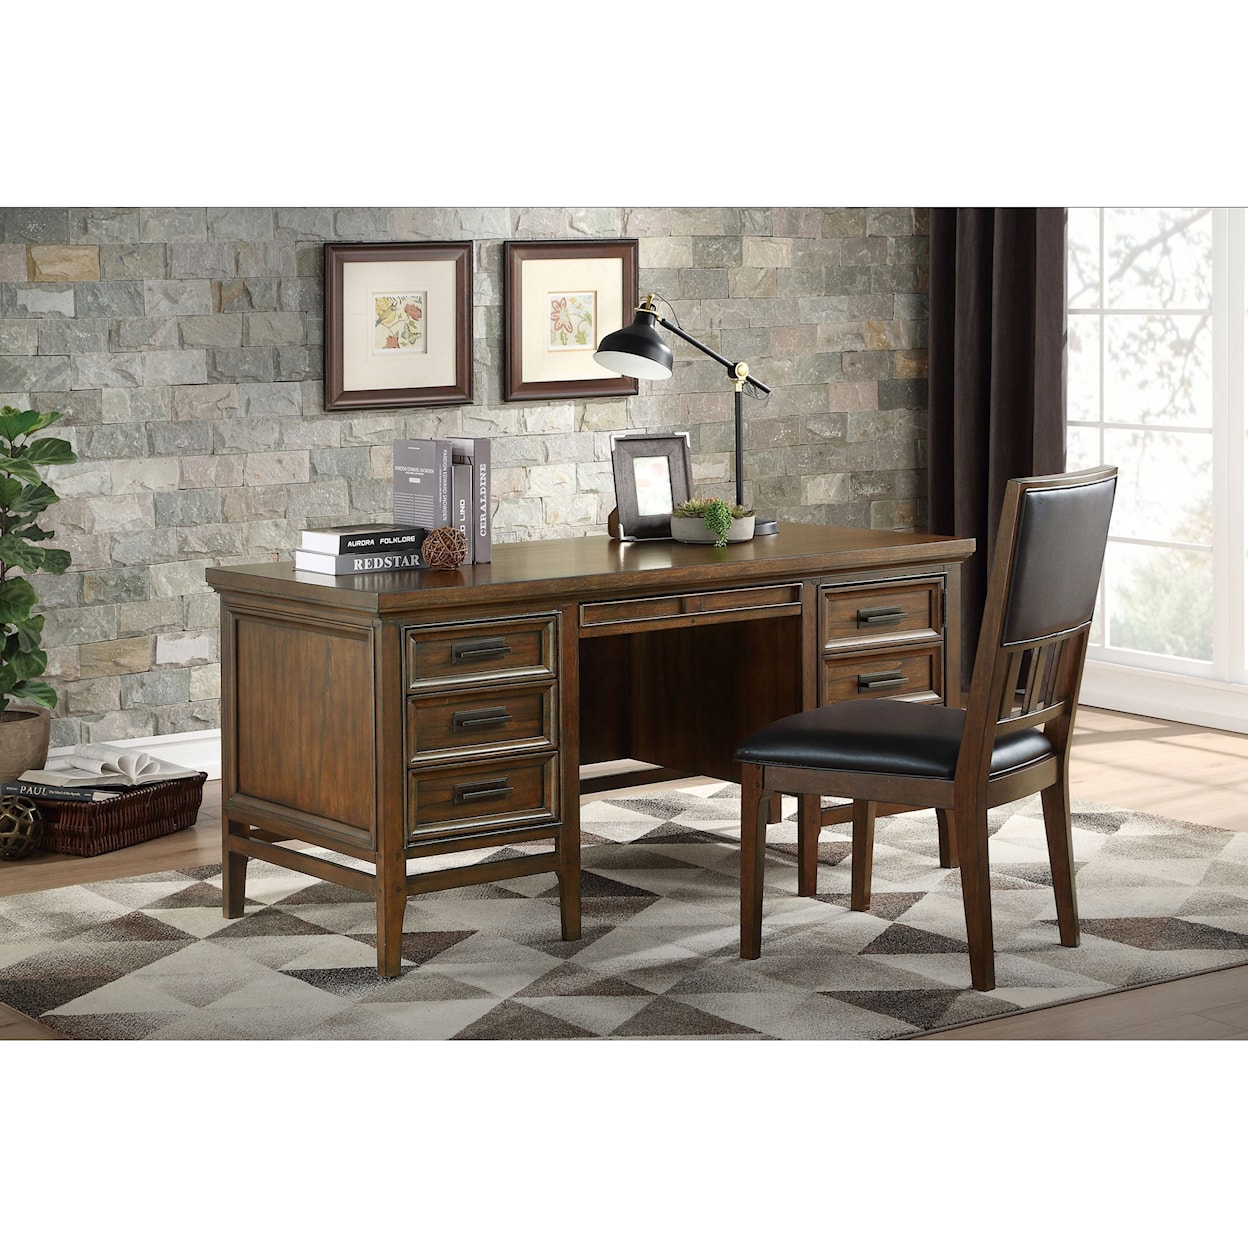 Homelegance Furniture Frazier Park Executive Desk